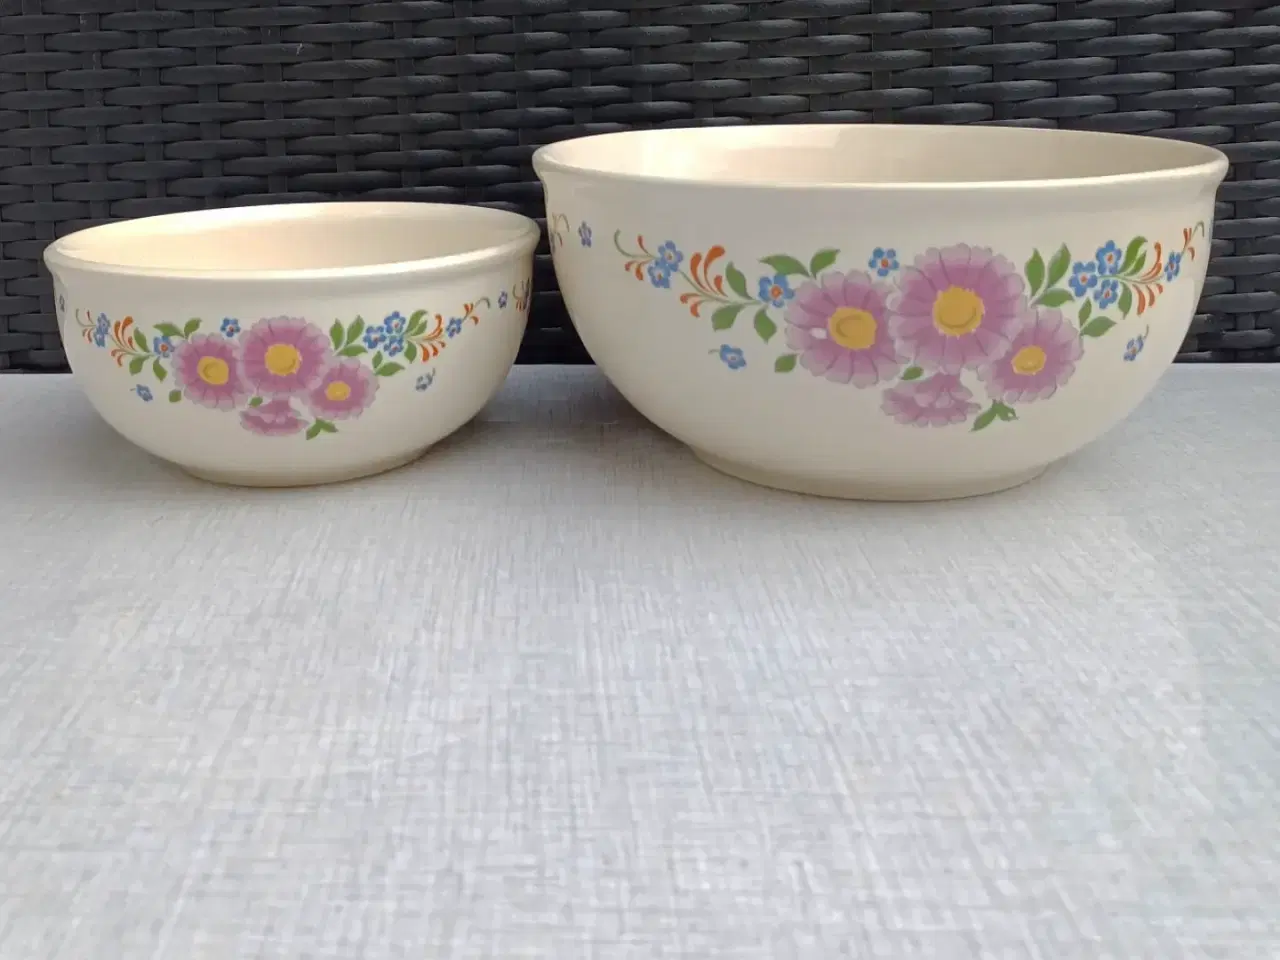 Billede 3 - To porcelæns skåle med blomstermotiv.